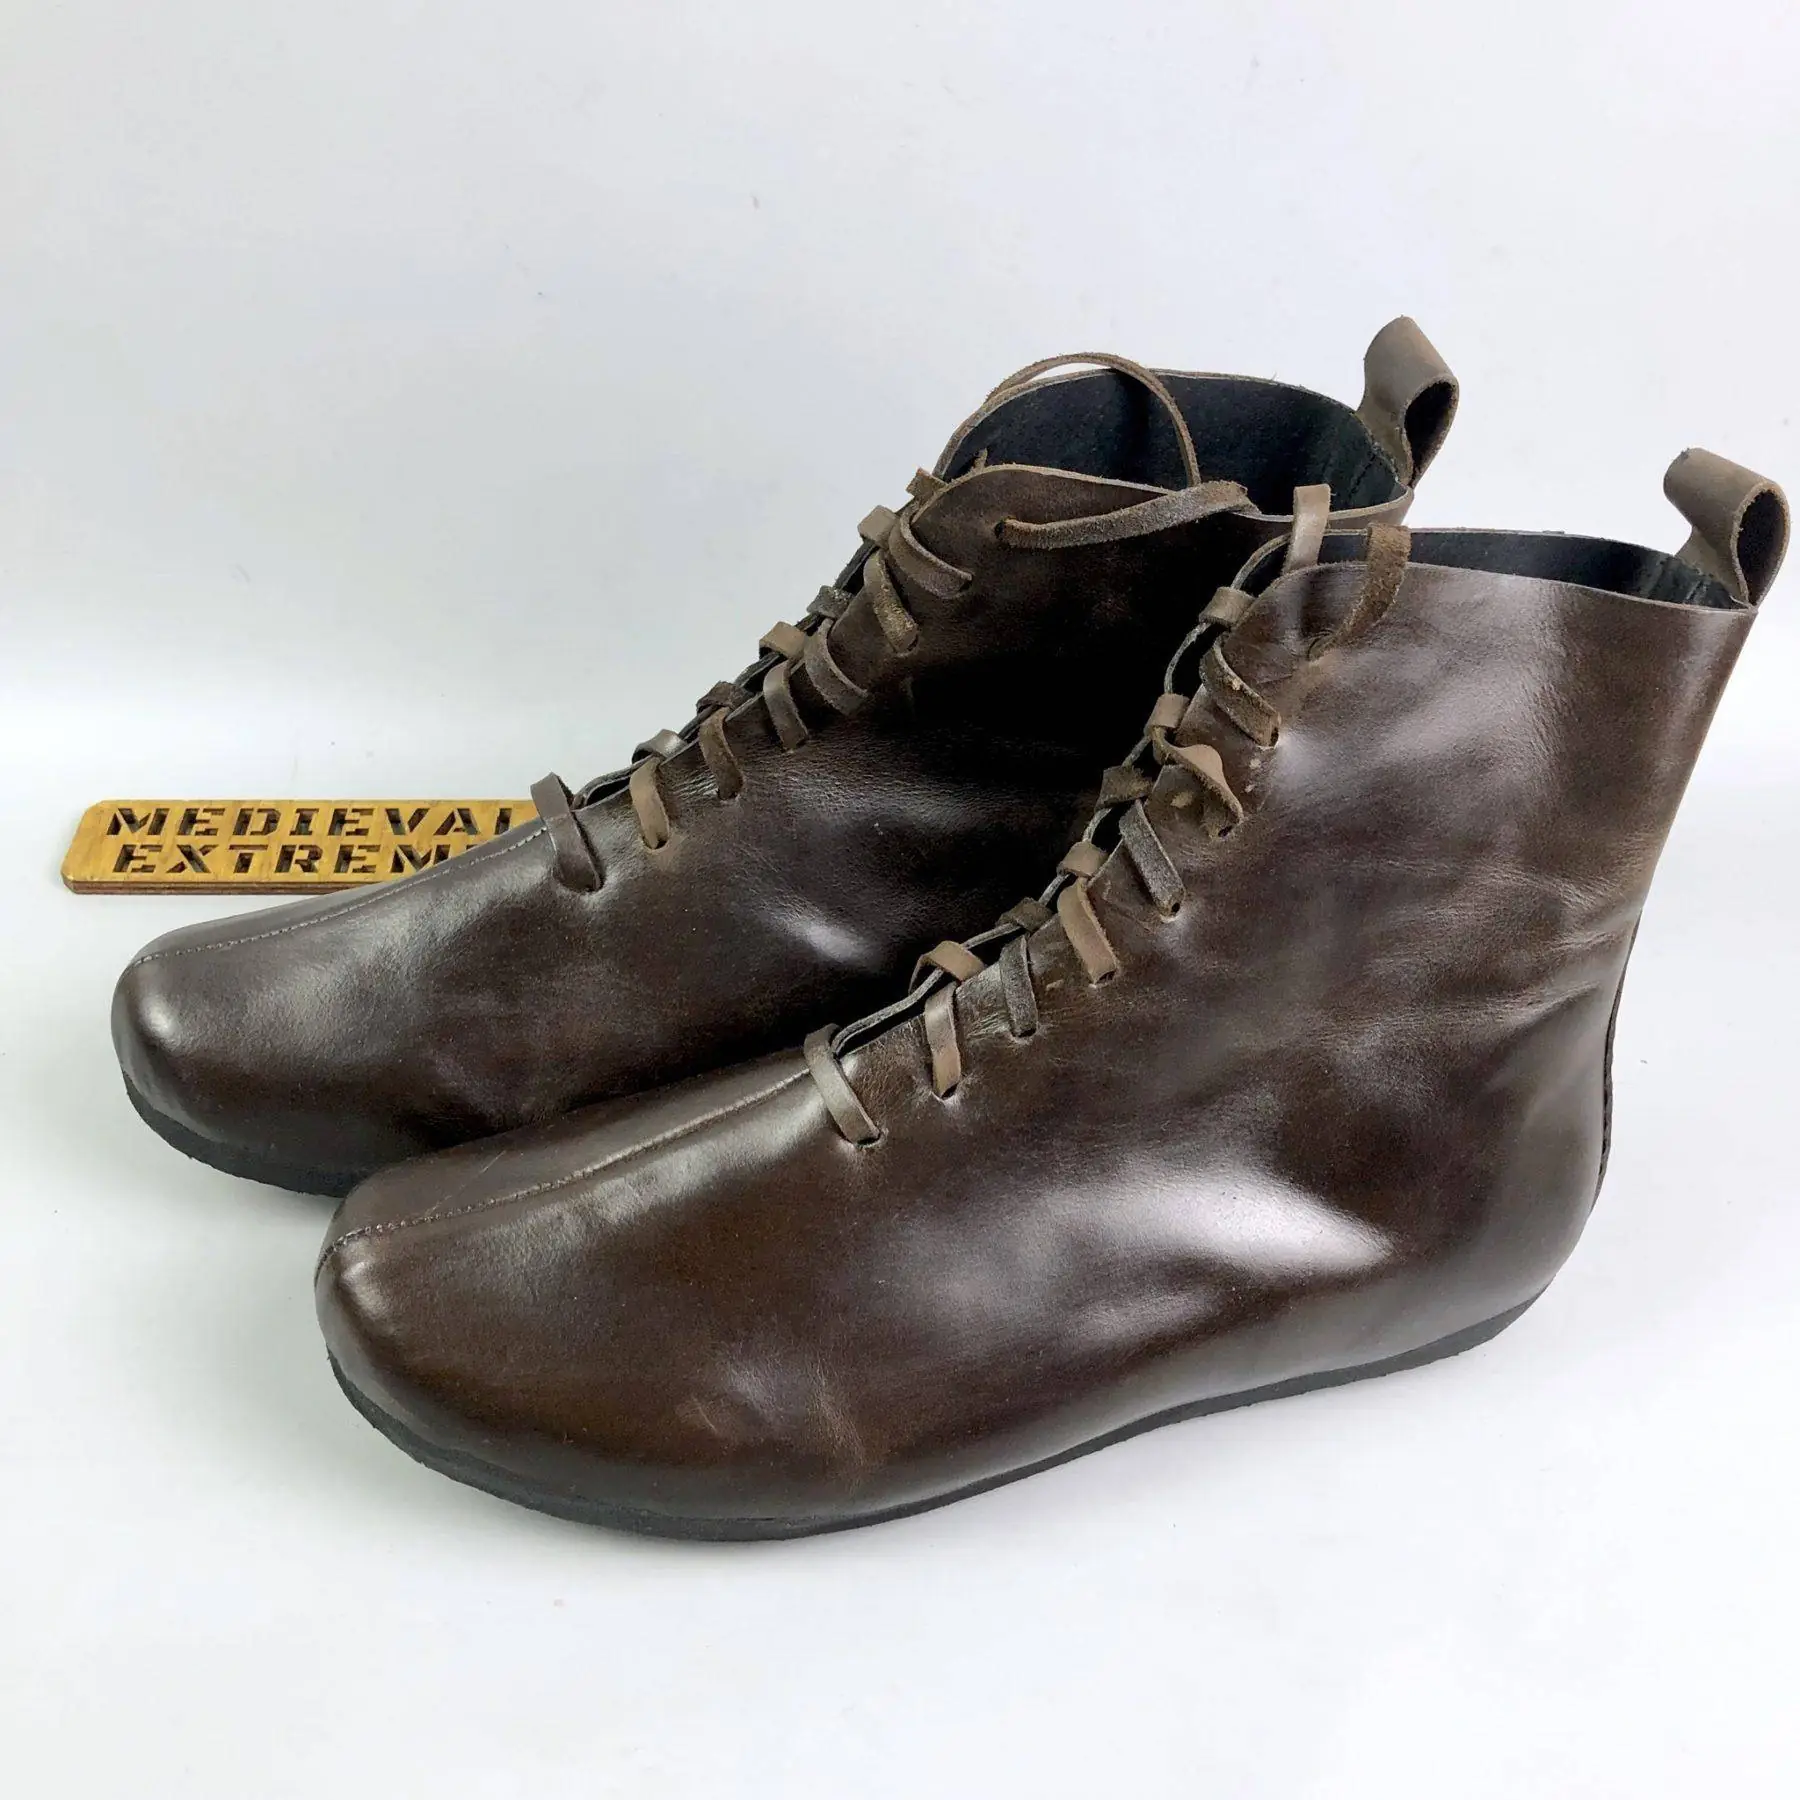 High battle boots – brown